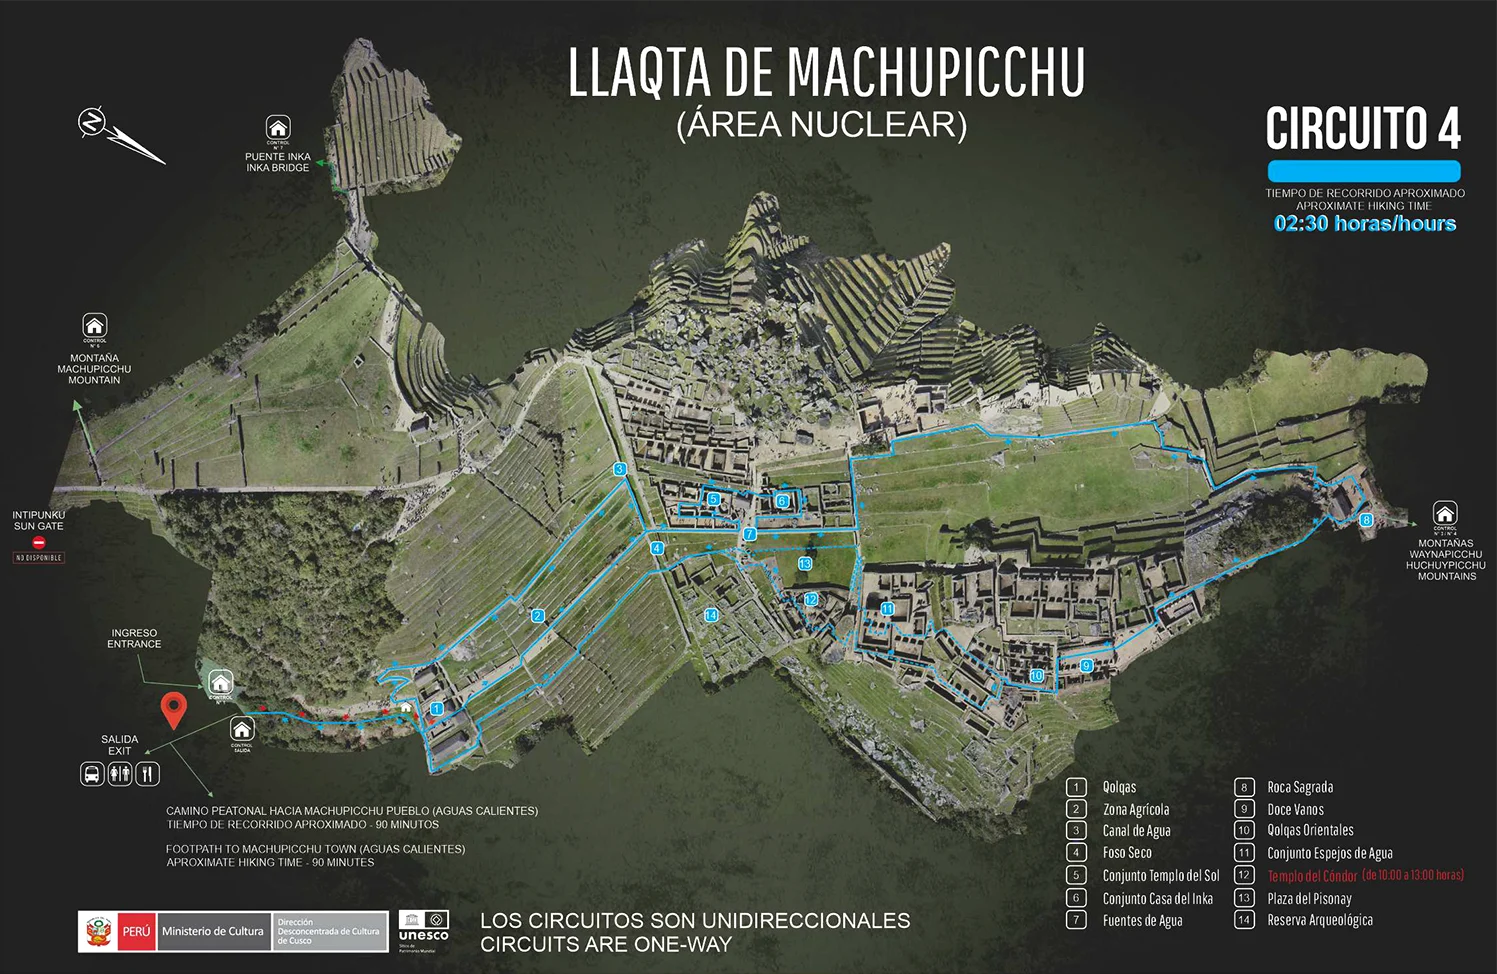 Circuit 4 in Machu Picchu - Huayna Picchu Mountain Guide